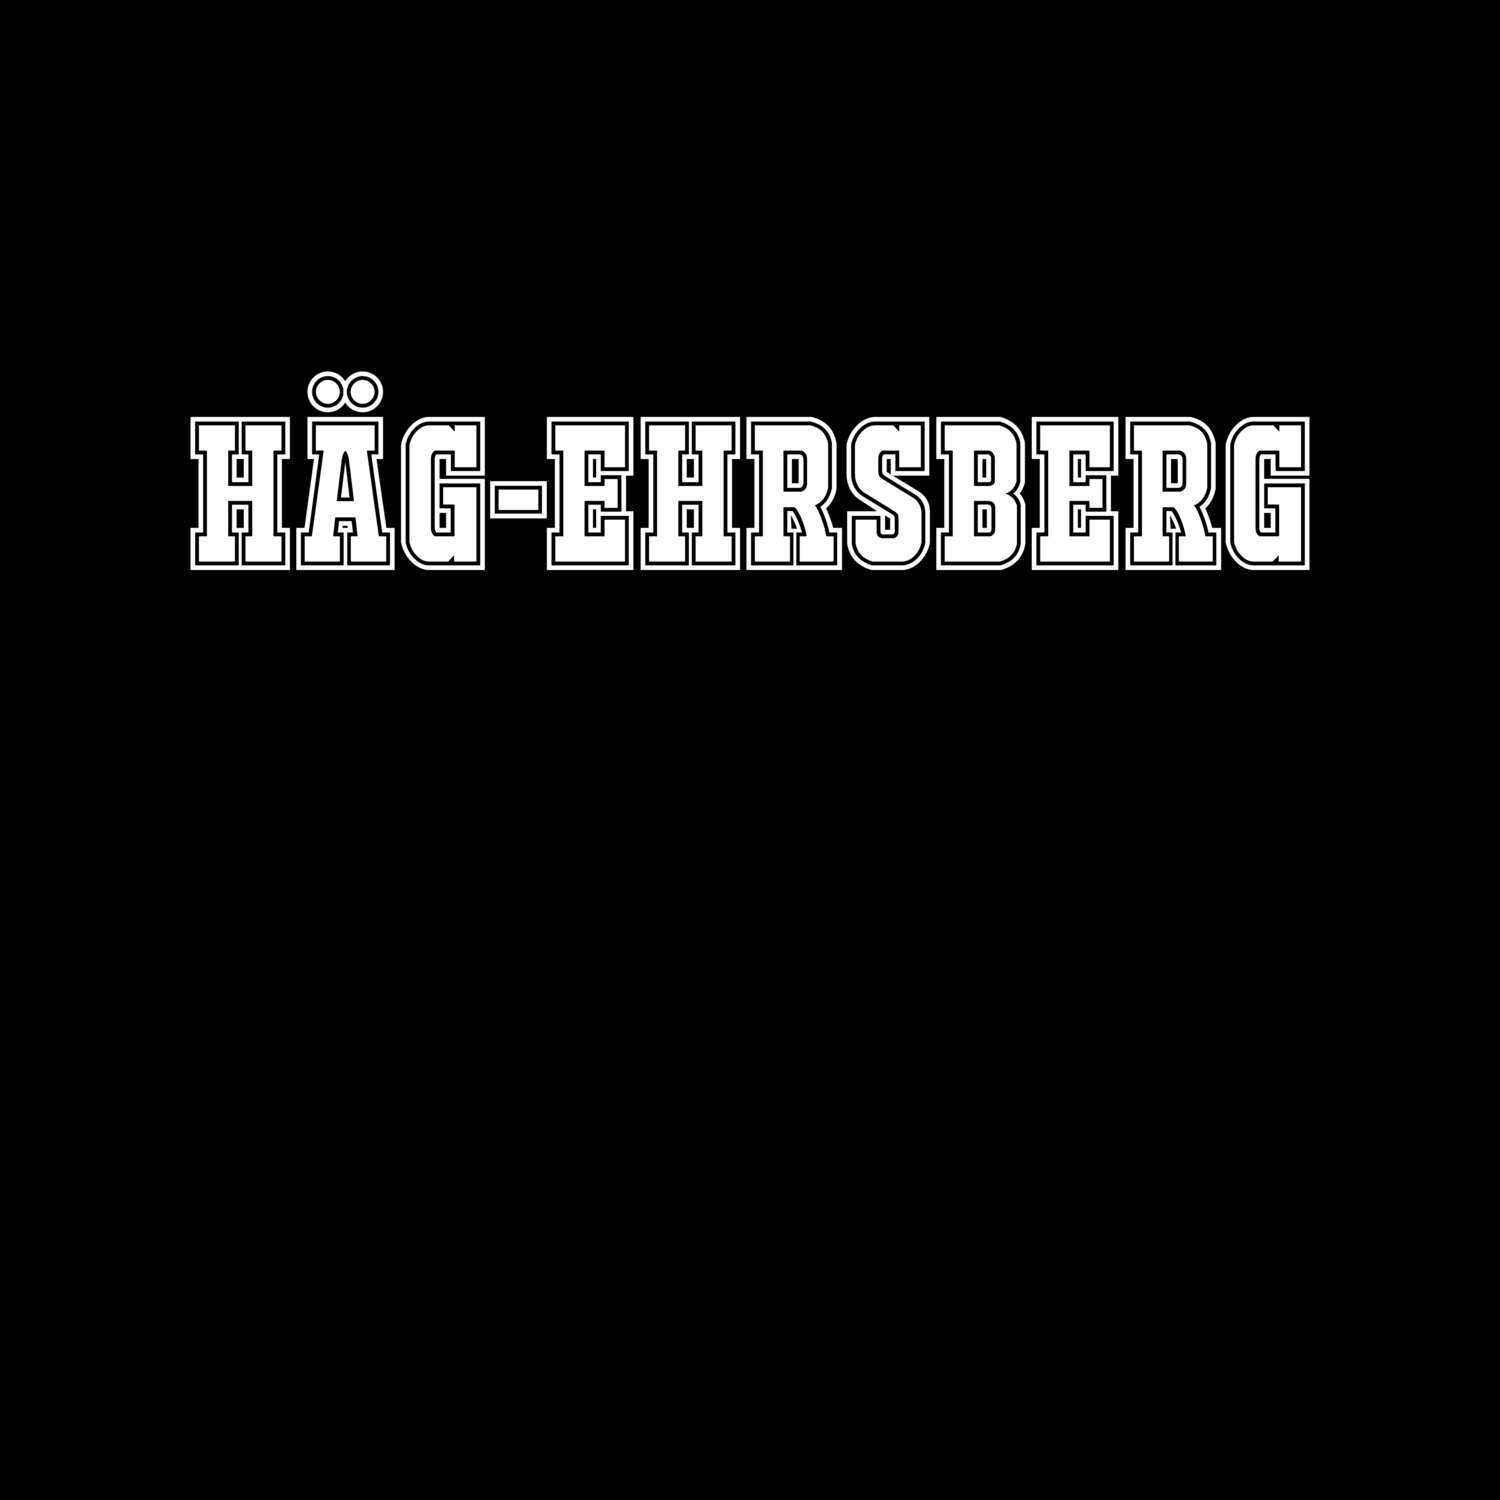 Häg-Ehrsberg T-Shirt »Classic«